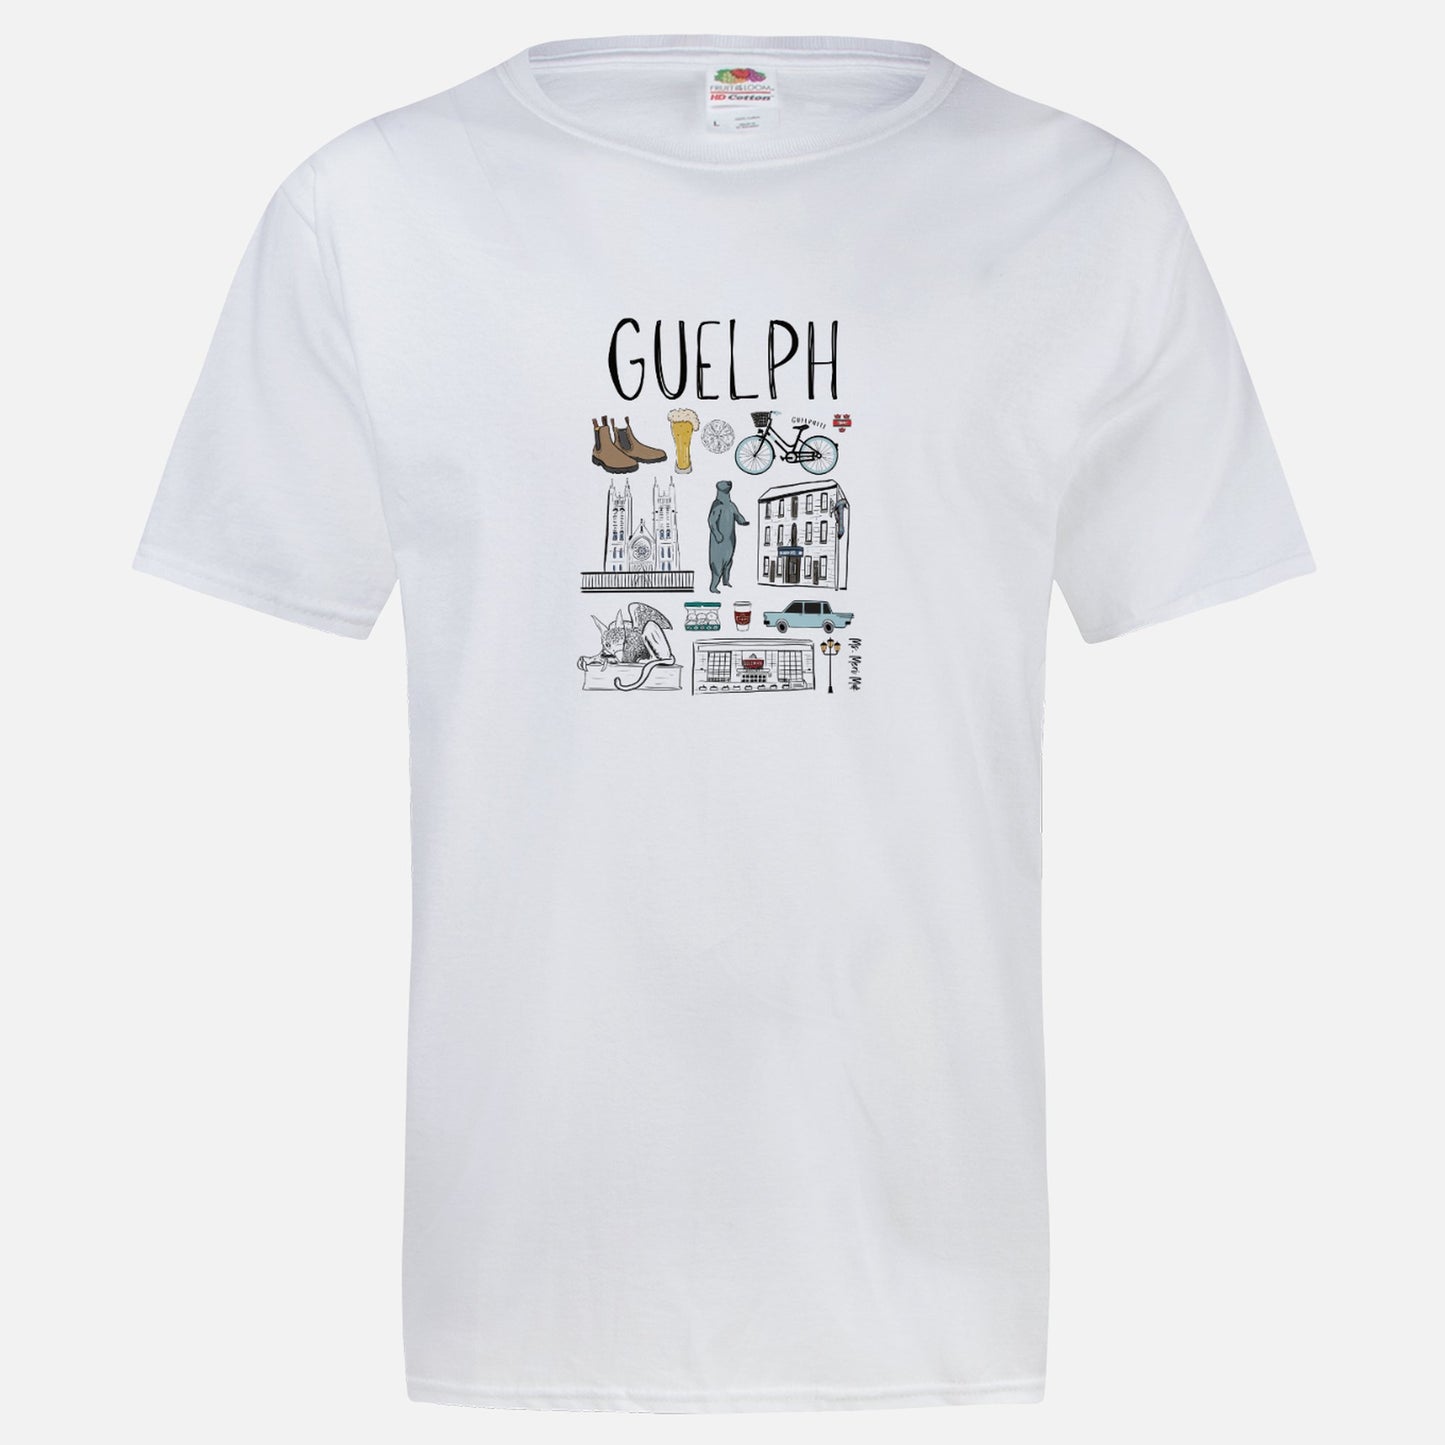 Guelph City T-Shirt - Ms.Meri Mak